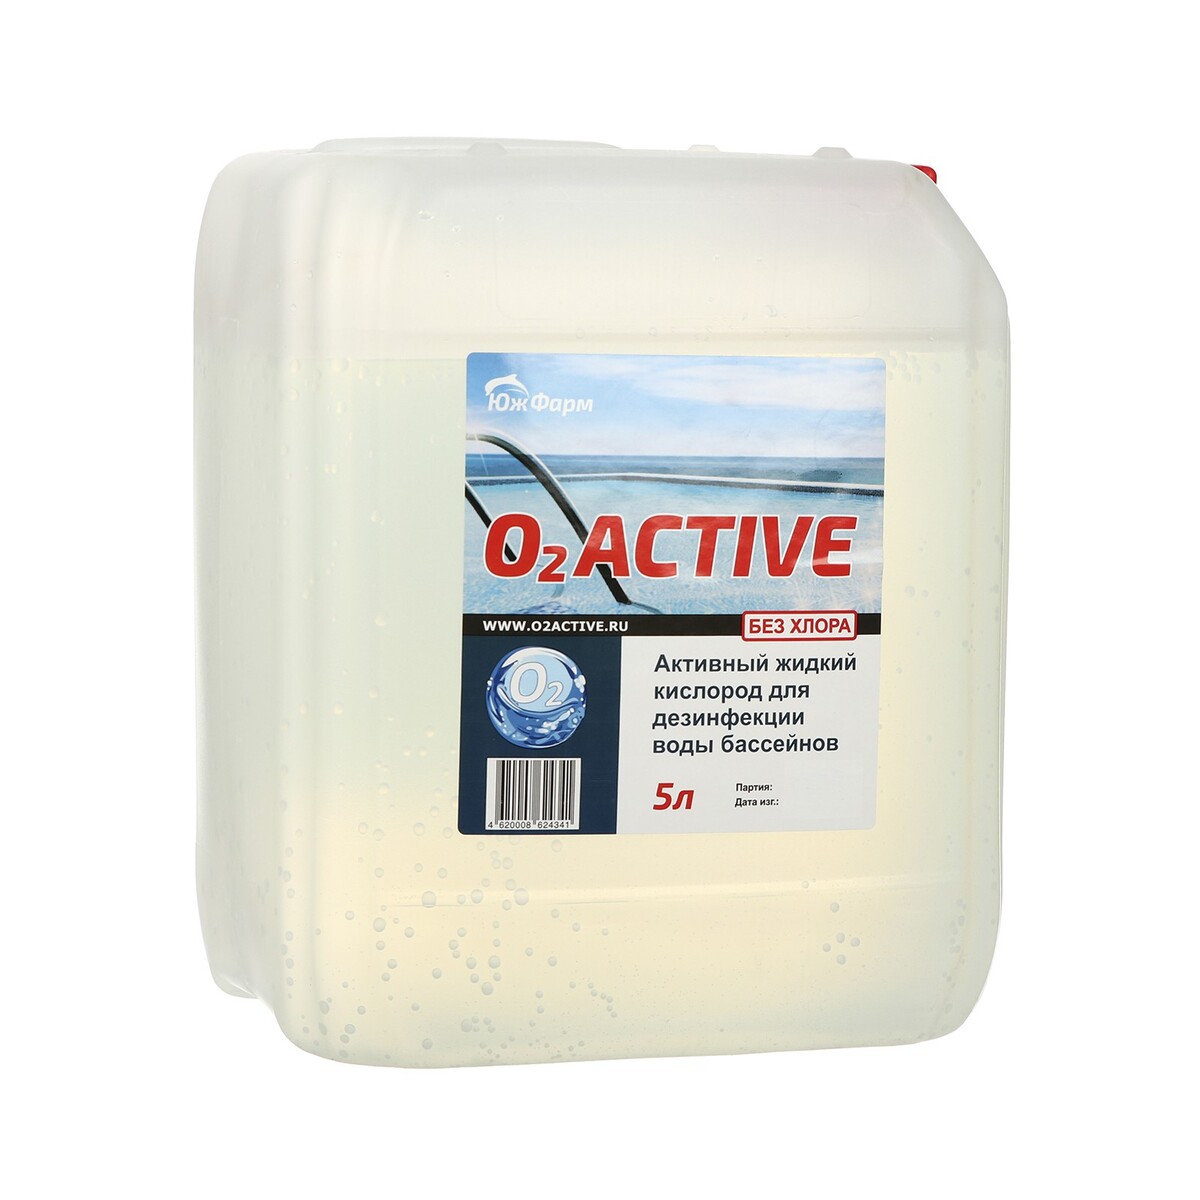 О2 active, средство для дезинфекции воды бассейнов, 5 л bayrol медленнорастворимый хлор для непрерывной дезинфекции воды chlorilong 200 1 кг